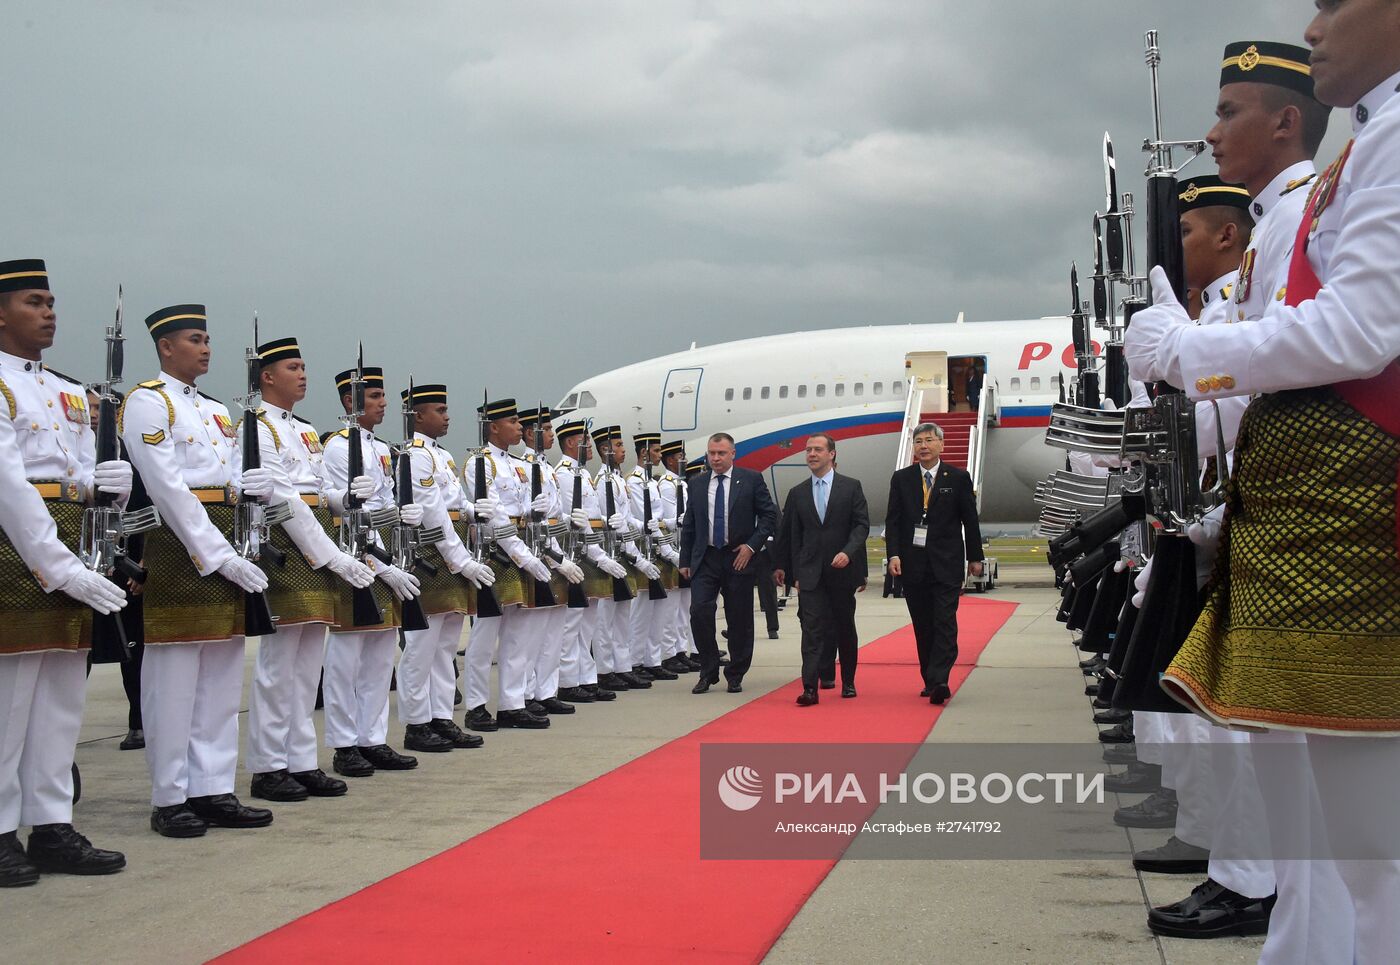 Визит премьер-министра РФ Д.Медведева в Малайзию для участия в Восточноазиатском саммите